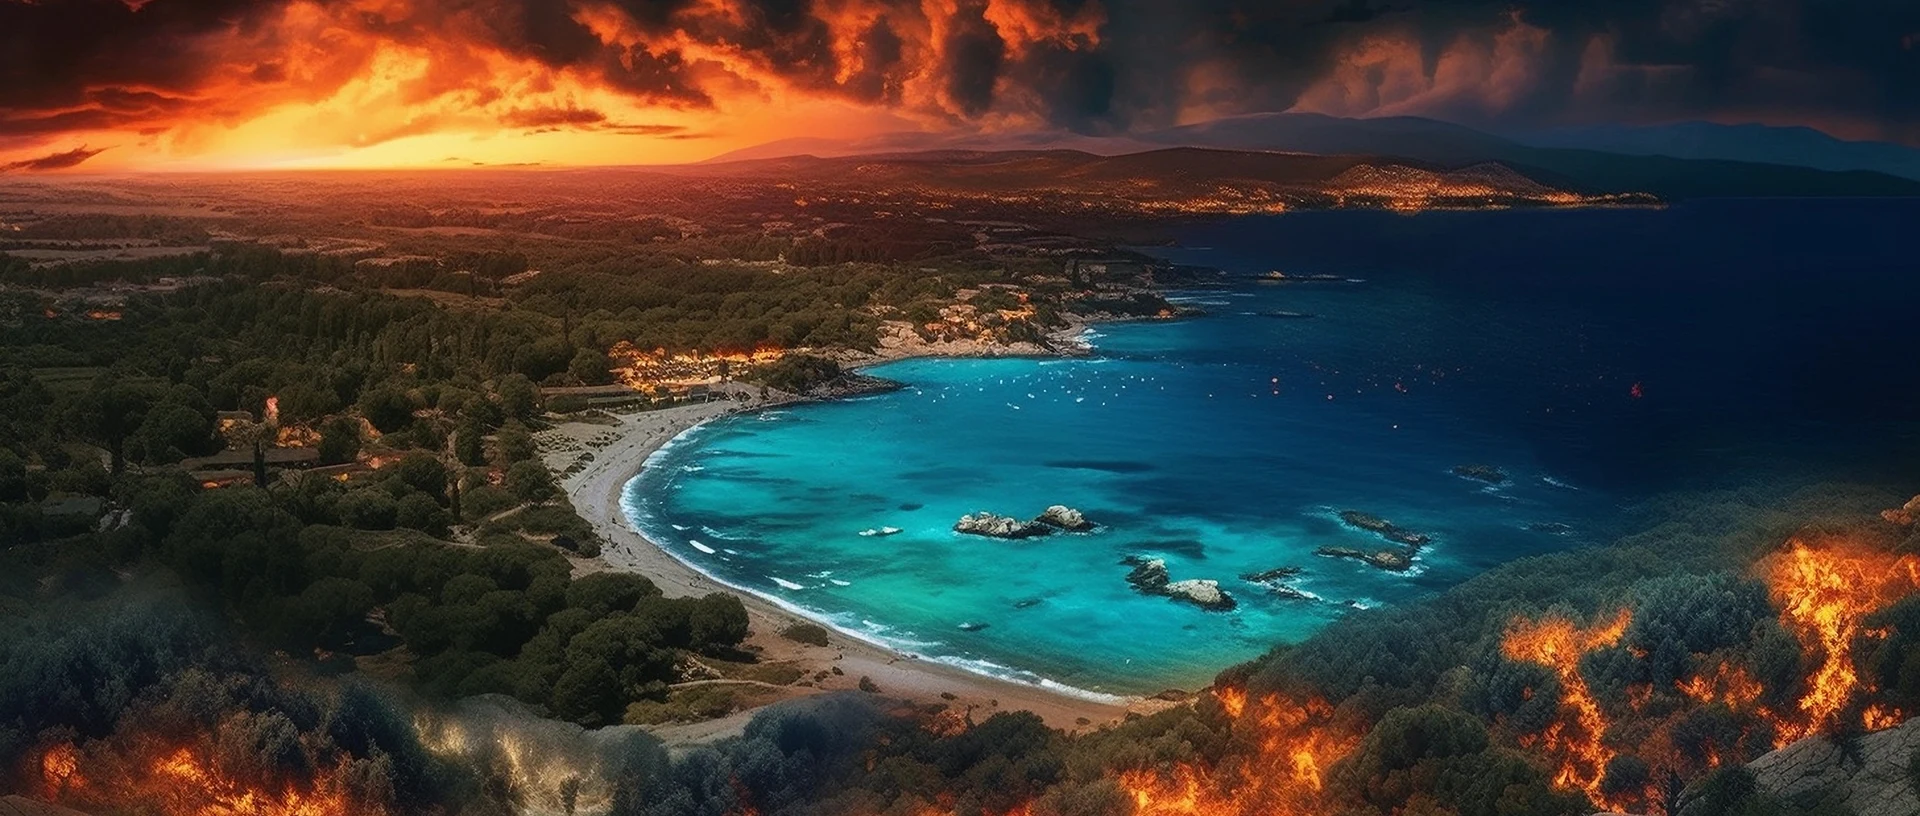 Foto von einer Meeresbucht auf Rhodos, die von tobenden Waldbränden eingekreist wird